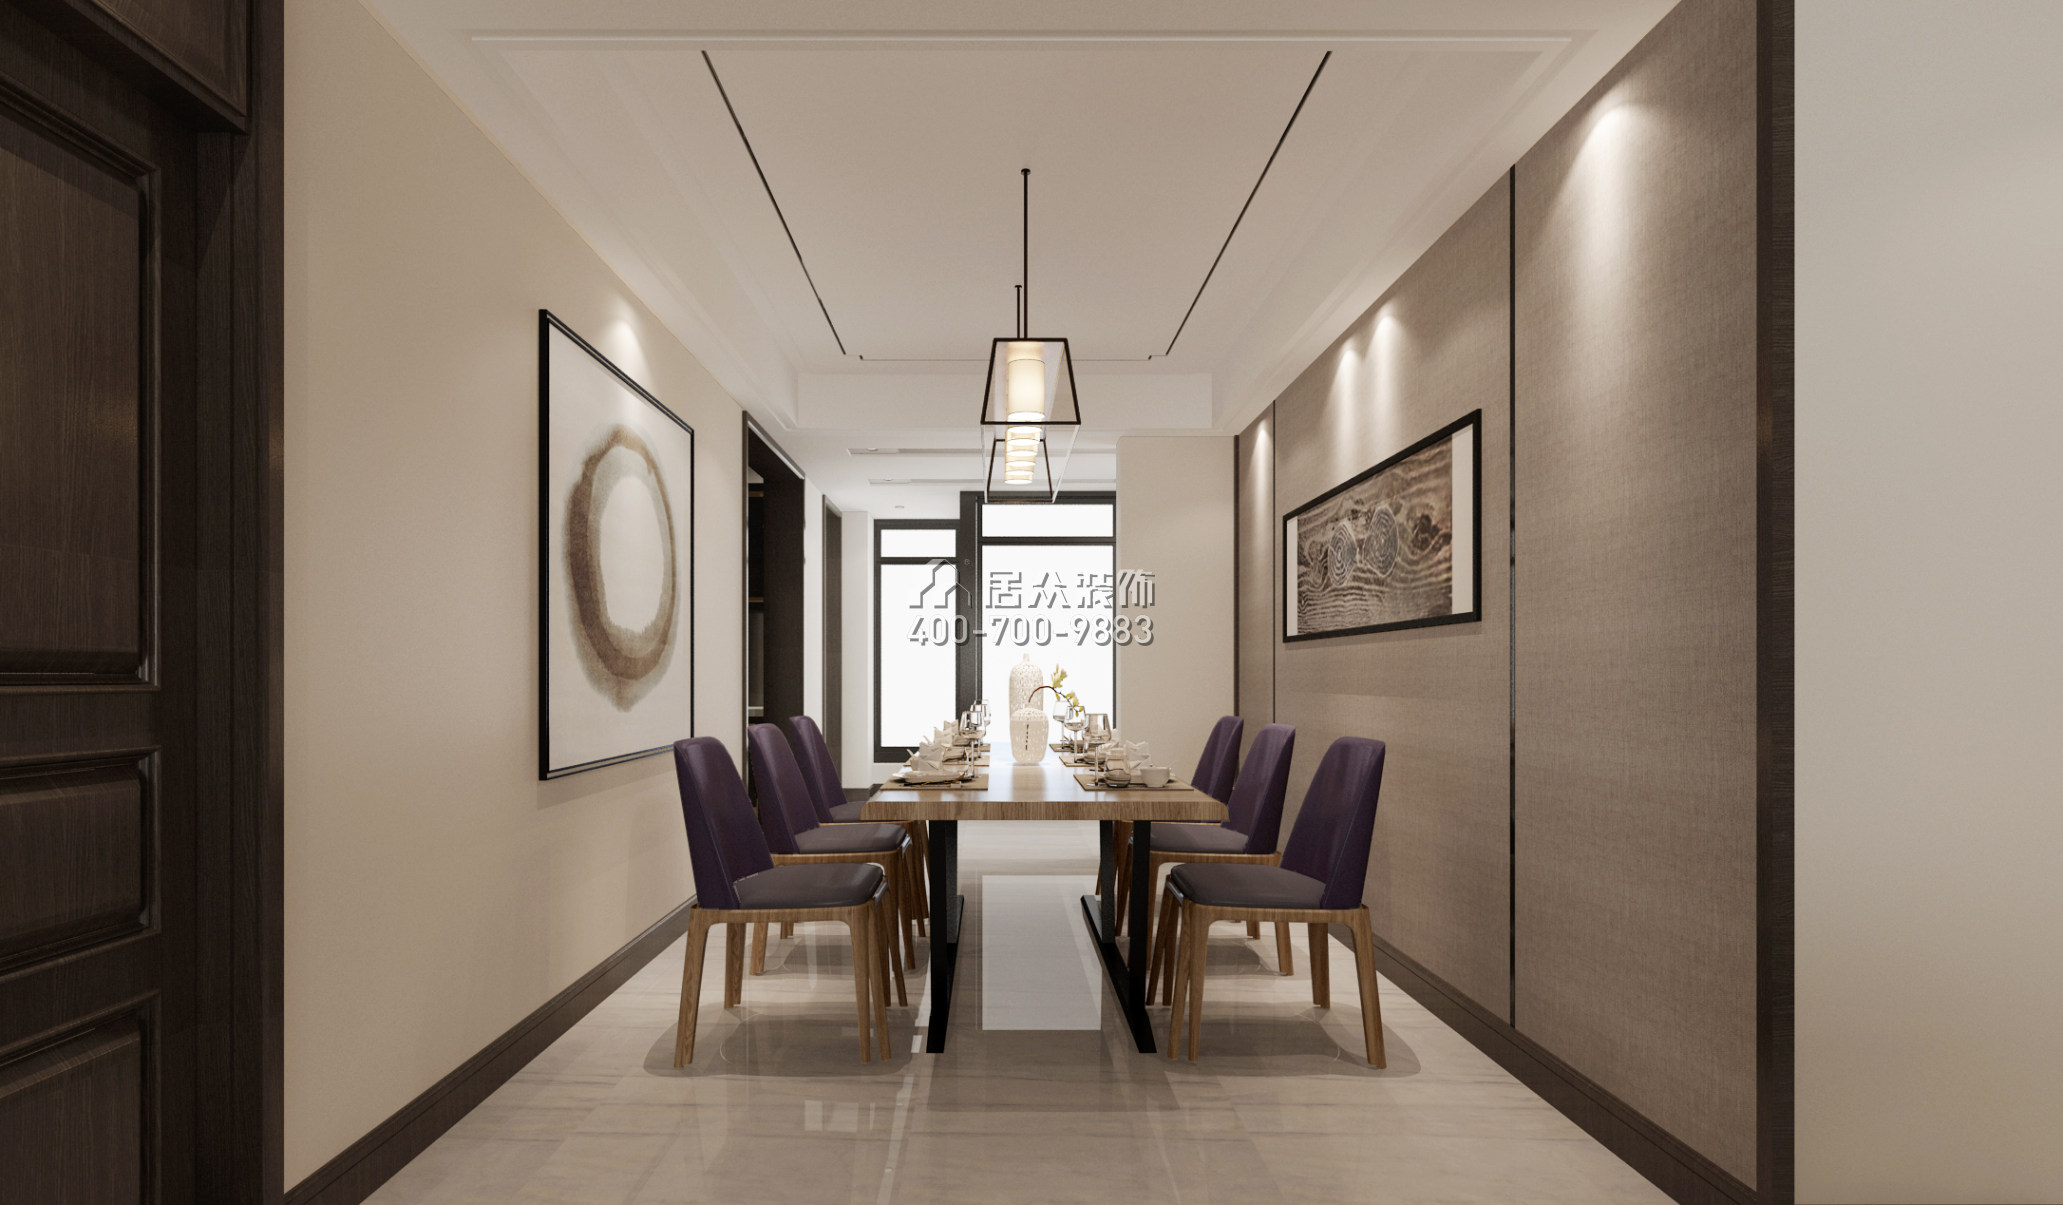 天源星城132平方米现代简约风格平层户型餐厅装修效果图